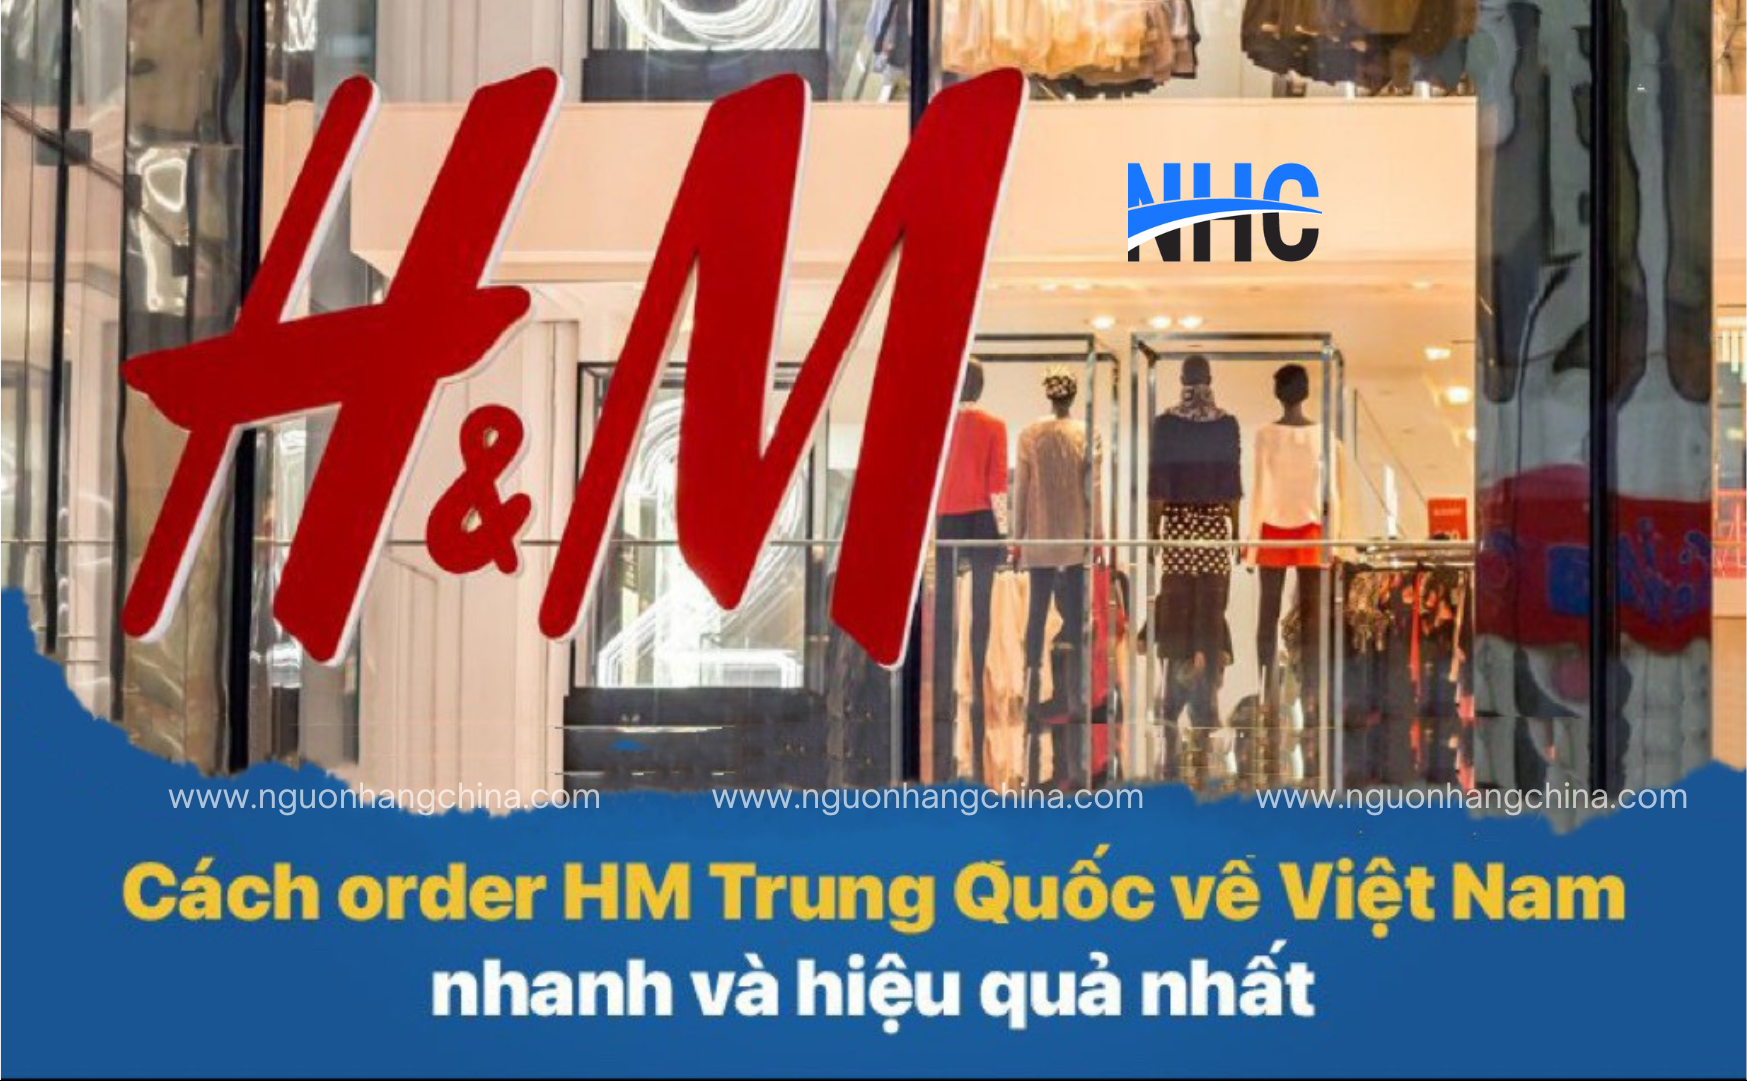 Cách order HM Trung Quốc về Việt Nam nhanh và hiệu quả nhất